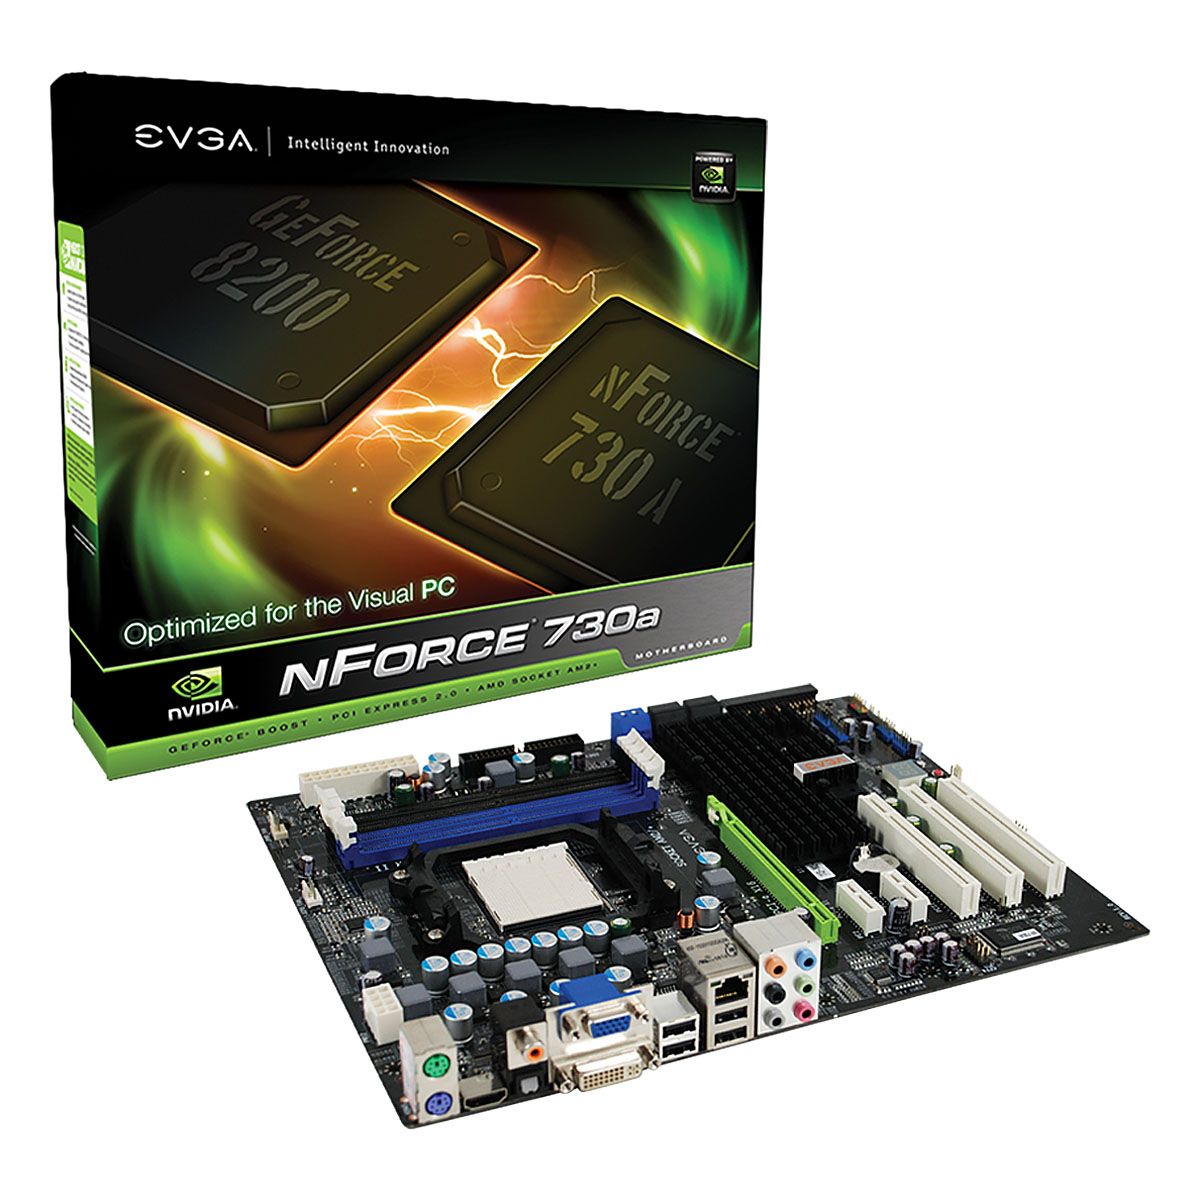 Immagine pubblicata in relazione al seguente contenuto: EVGA commercializza la motherboard nForce 730a per cpu AM2+ | Nome immagine: news9075_1.jpg